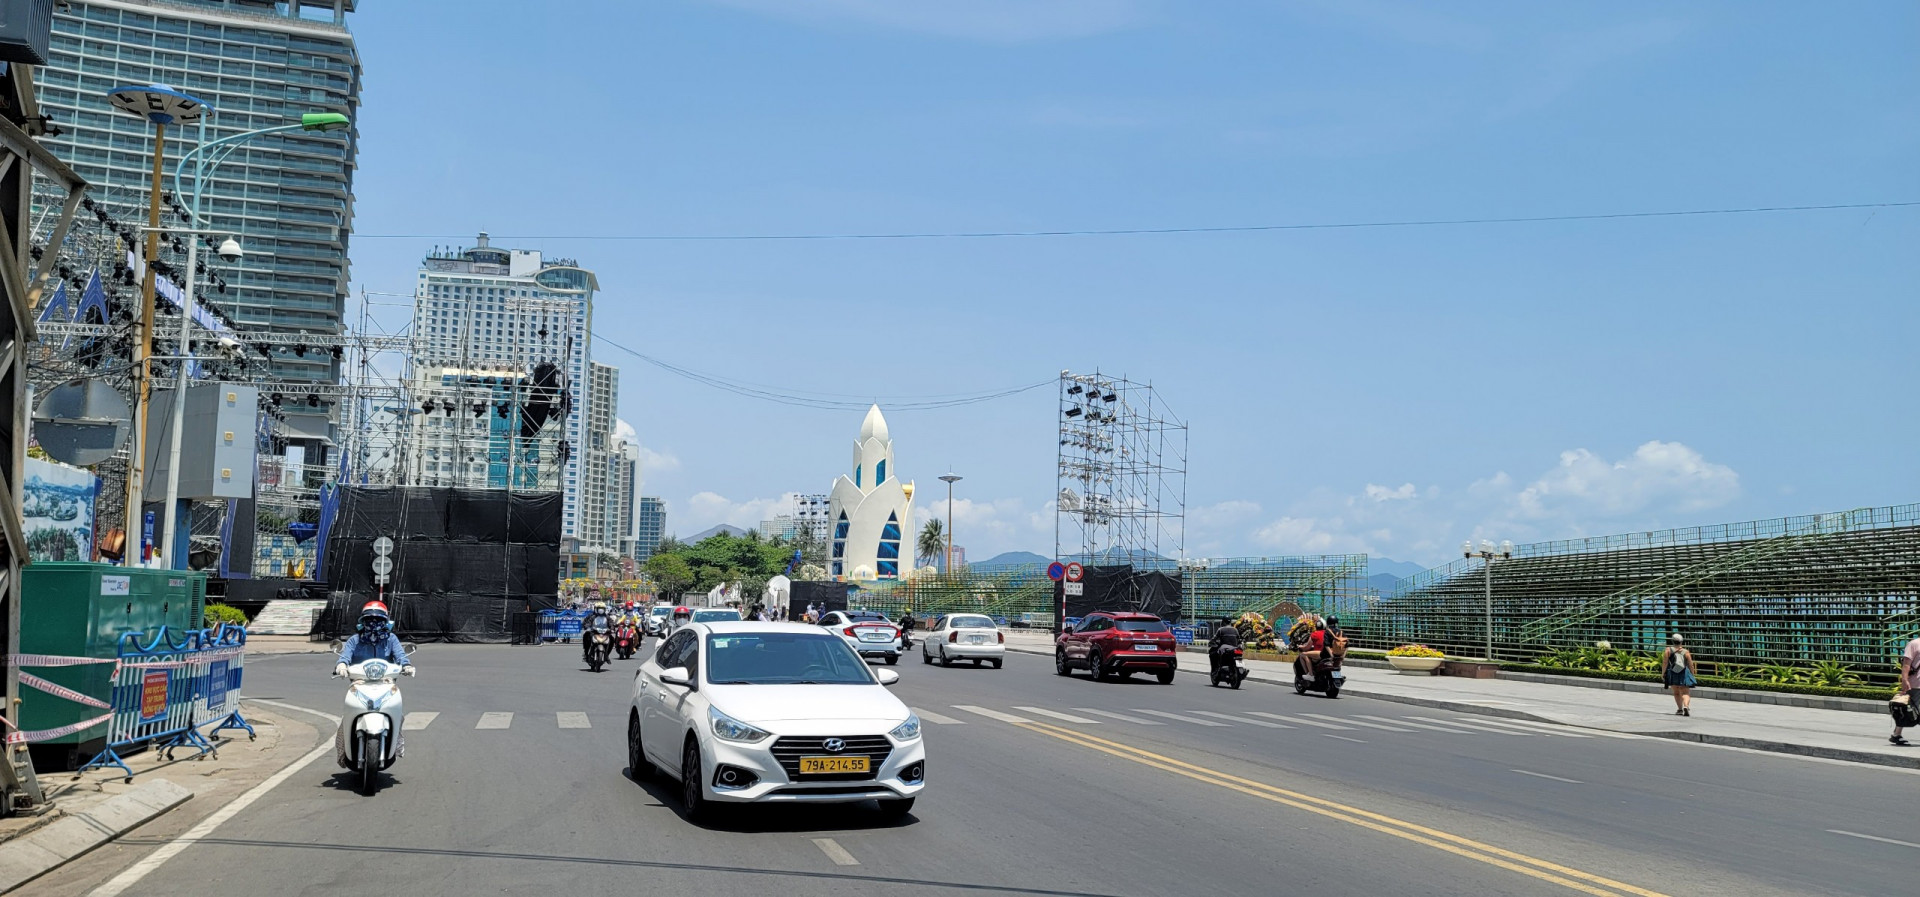 Khu vực tổ chức sự kiện Kỷ niệm 370 năm xây dựng và phát triển tỉnh Khánh Hòa trên đường Trần Phú được phân luồng giao thông tạm thời.